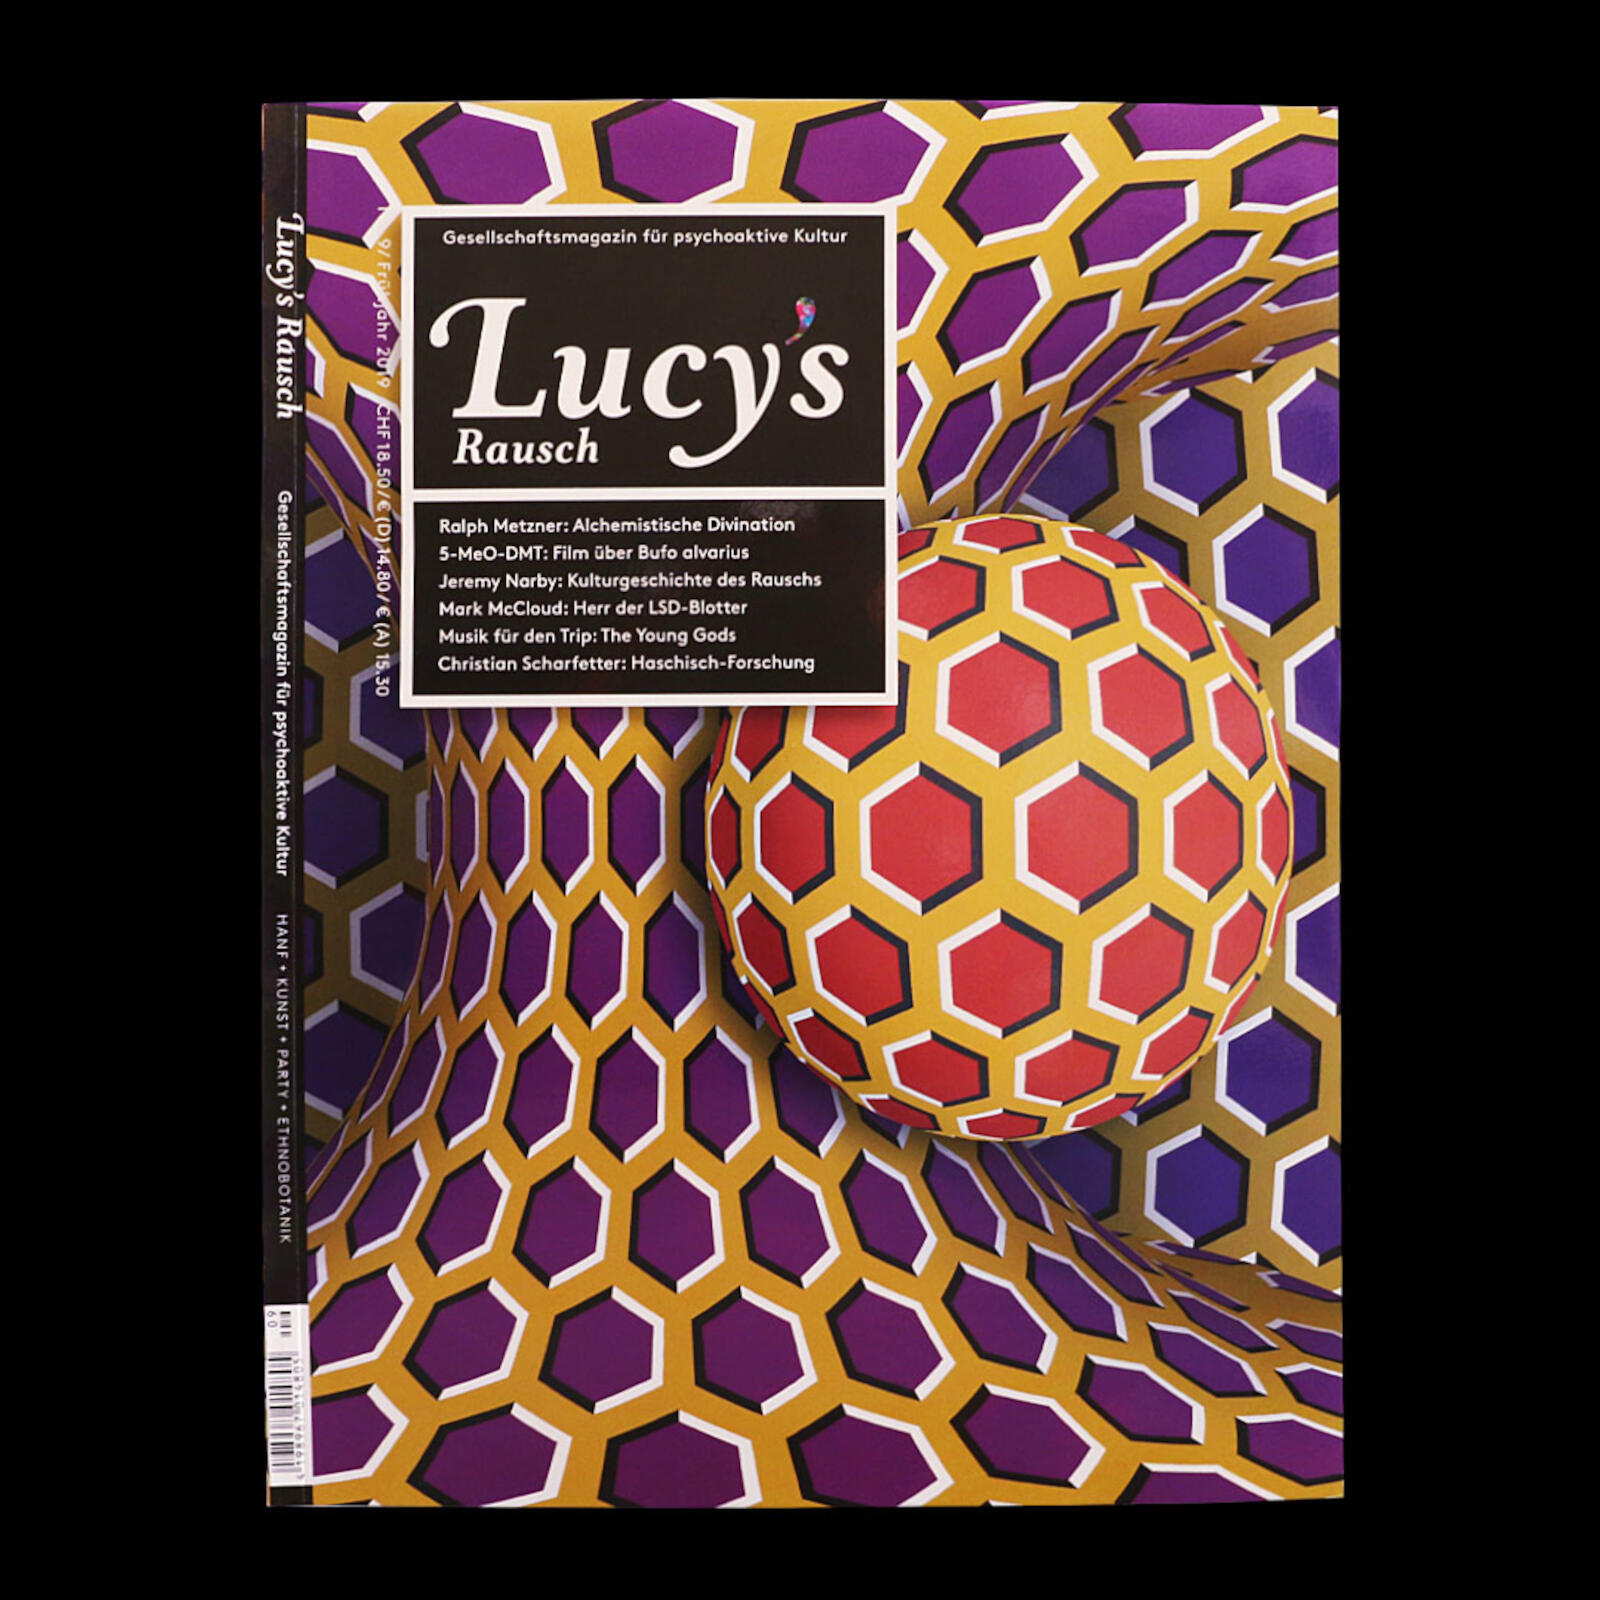 Lucy's Rausch | Volume 9